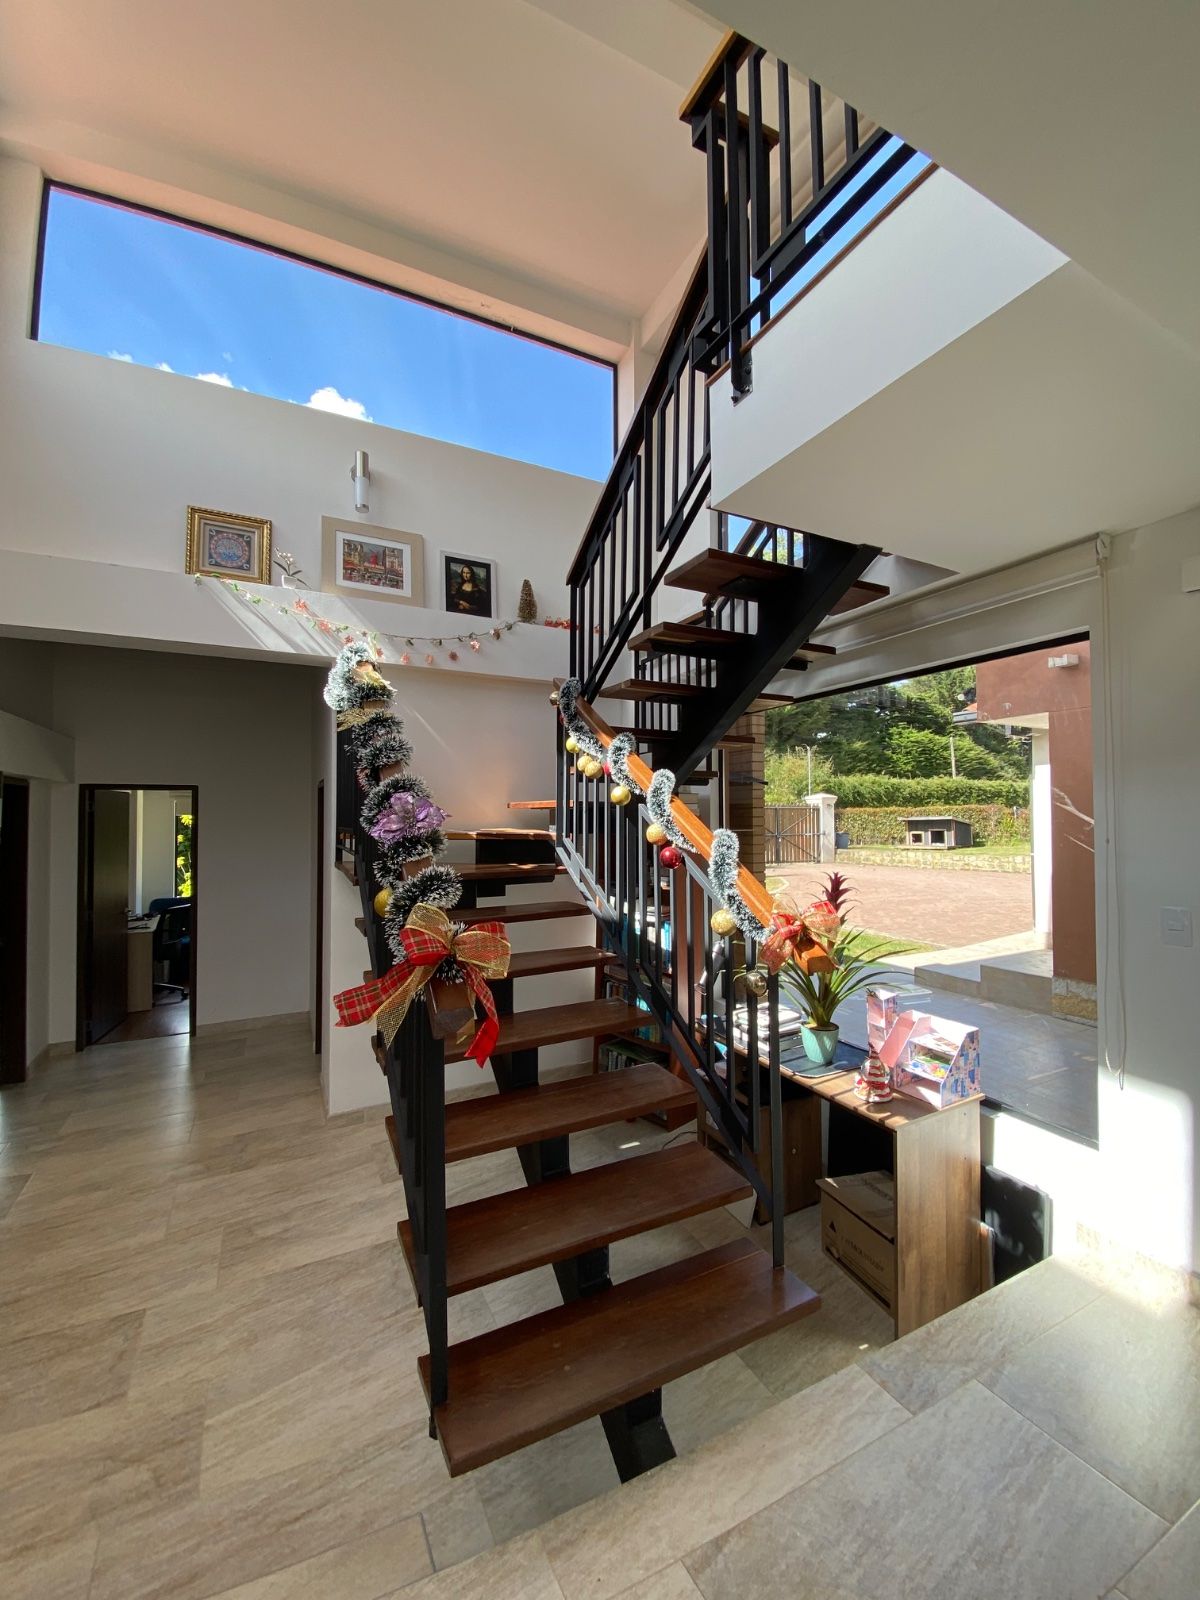 Casa en arriendo La Calera 3400 m² - $ 6.500.000